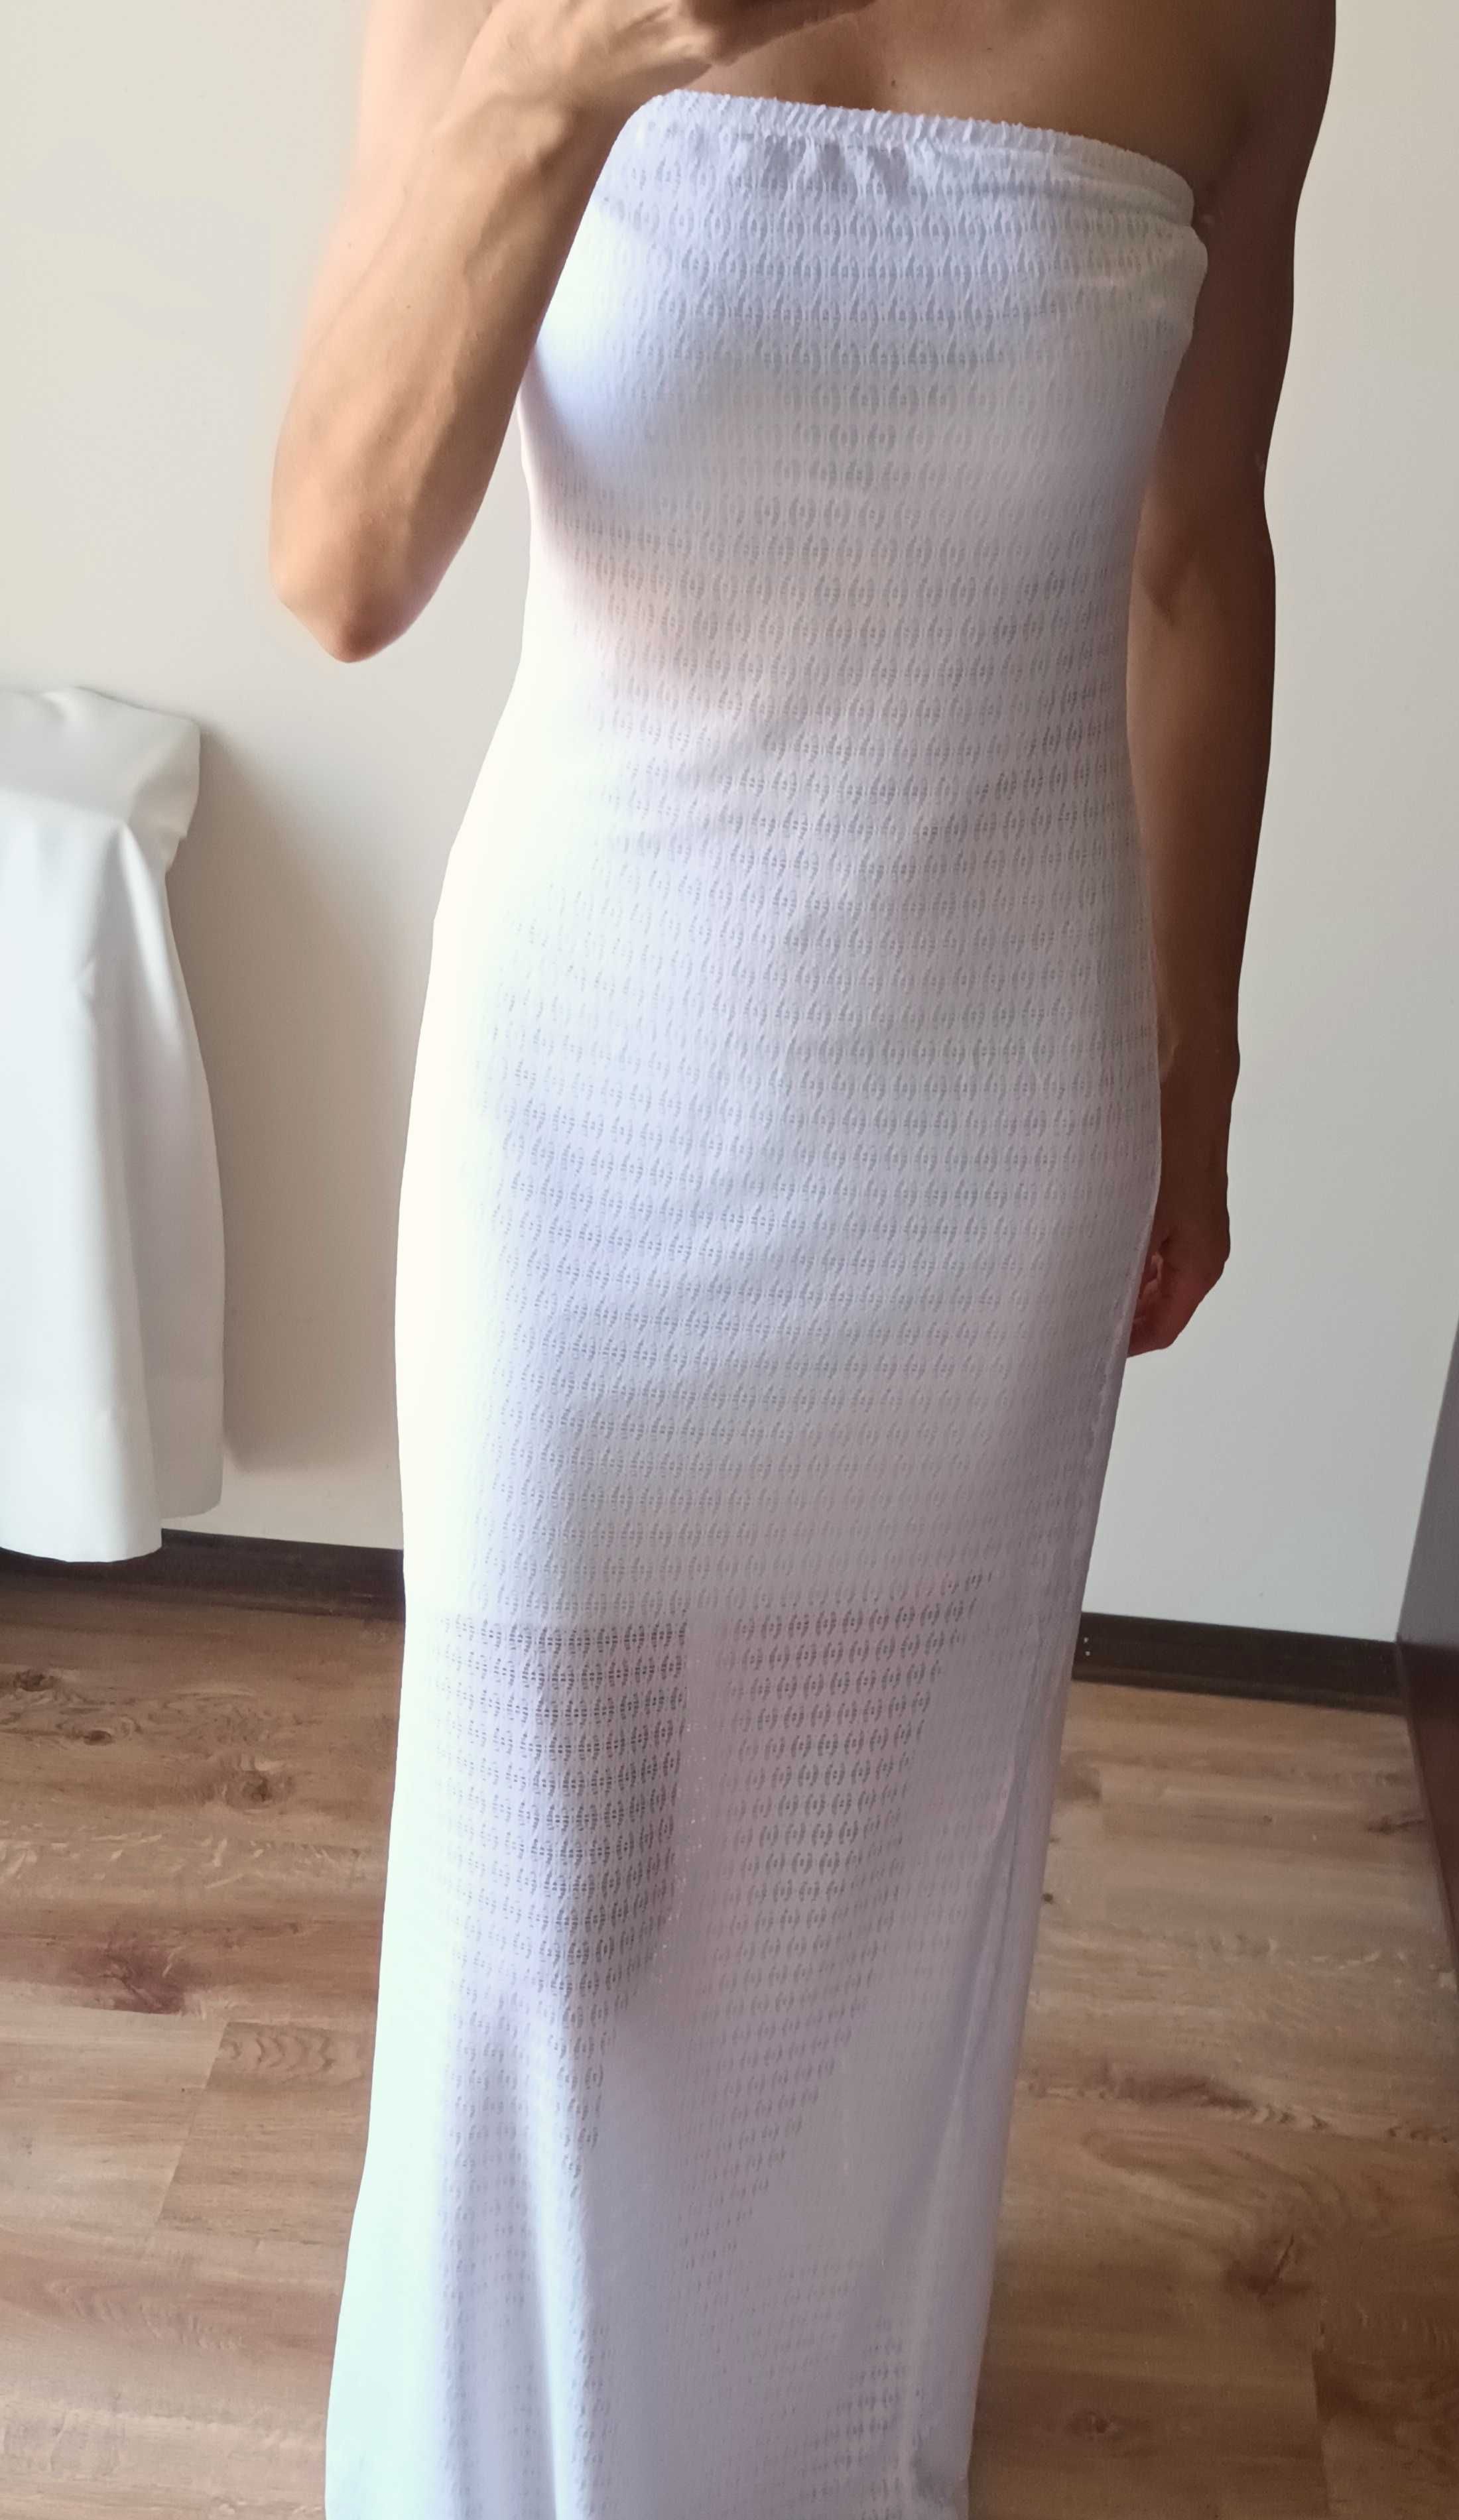 Calzedonia koronkowa sukienka bez rękawów rozmiar 36-38